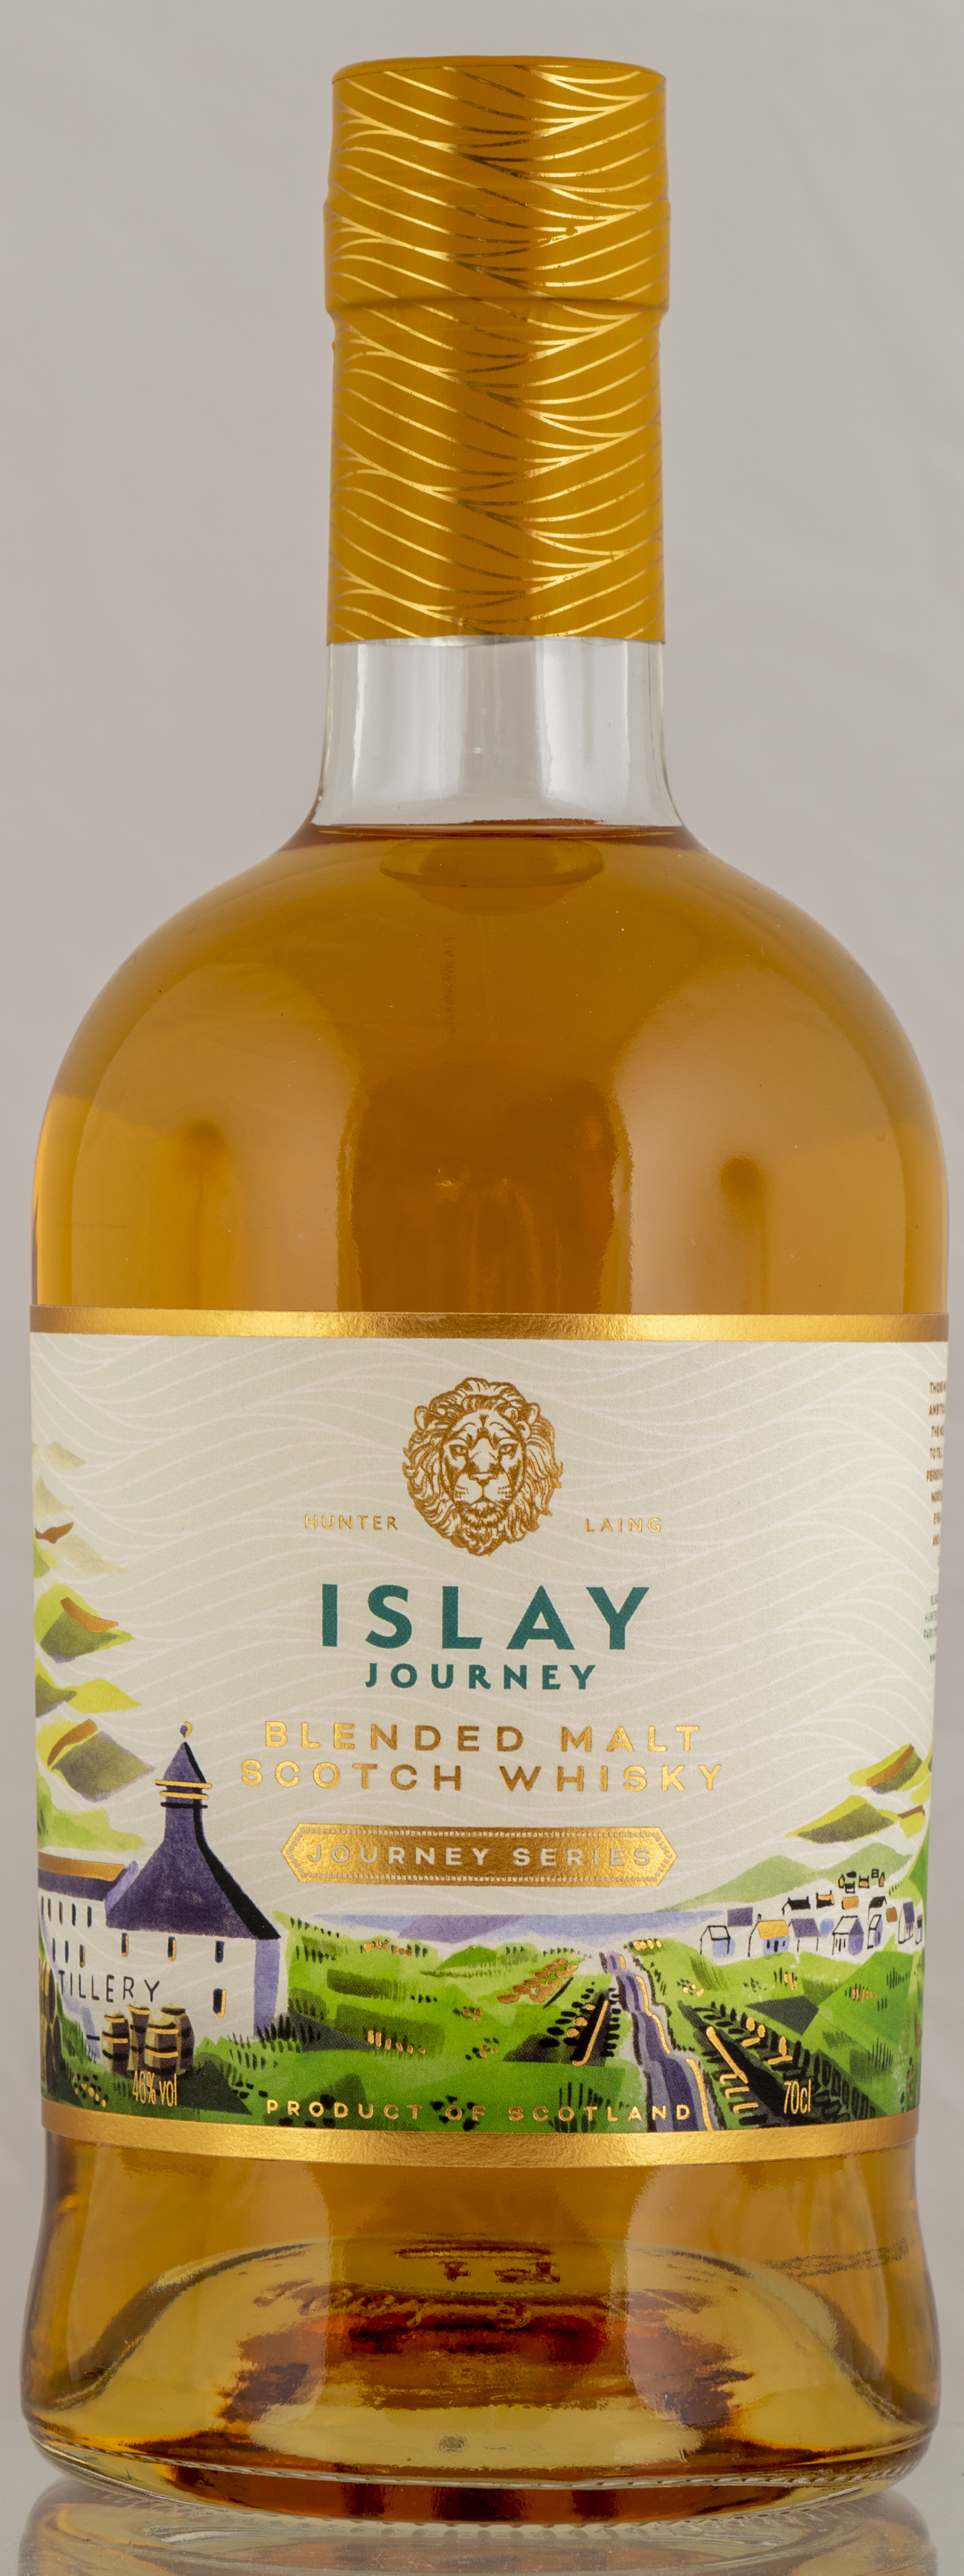 Billede: PHC_7326 - Hunter Laing Islay Journey Blended Malt - bottle front.jpg